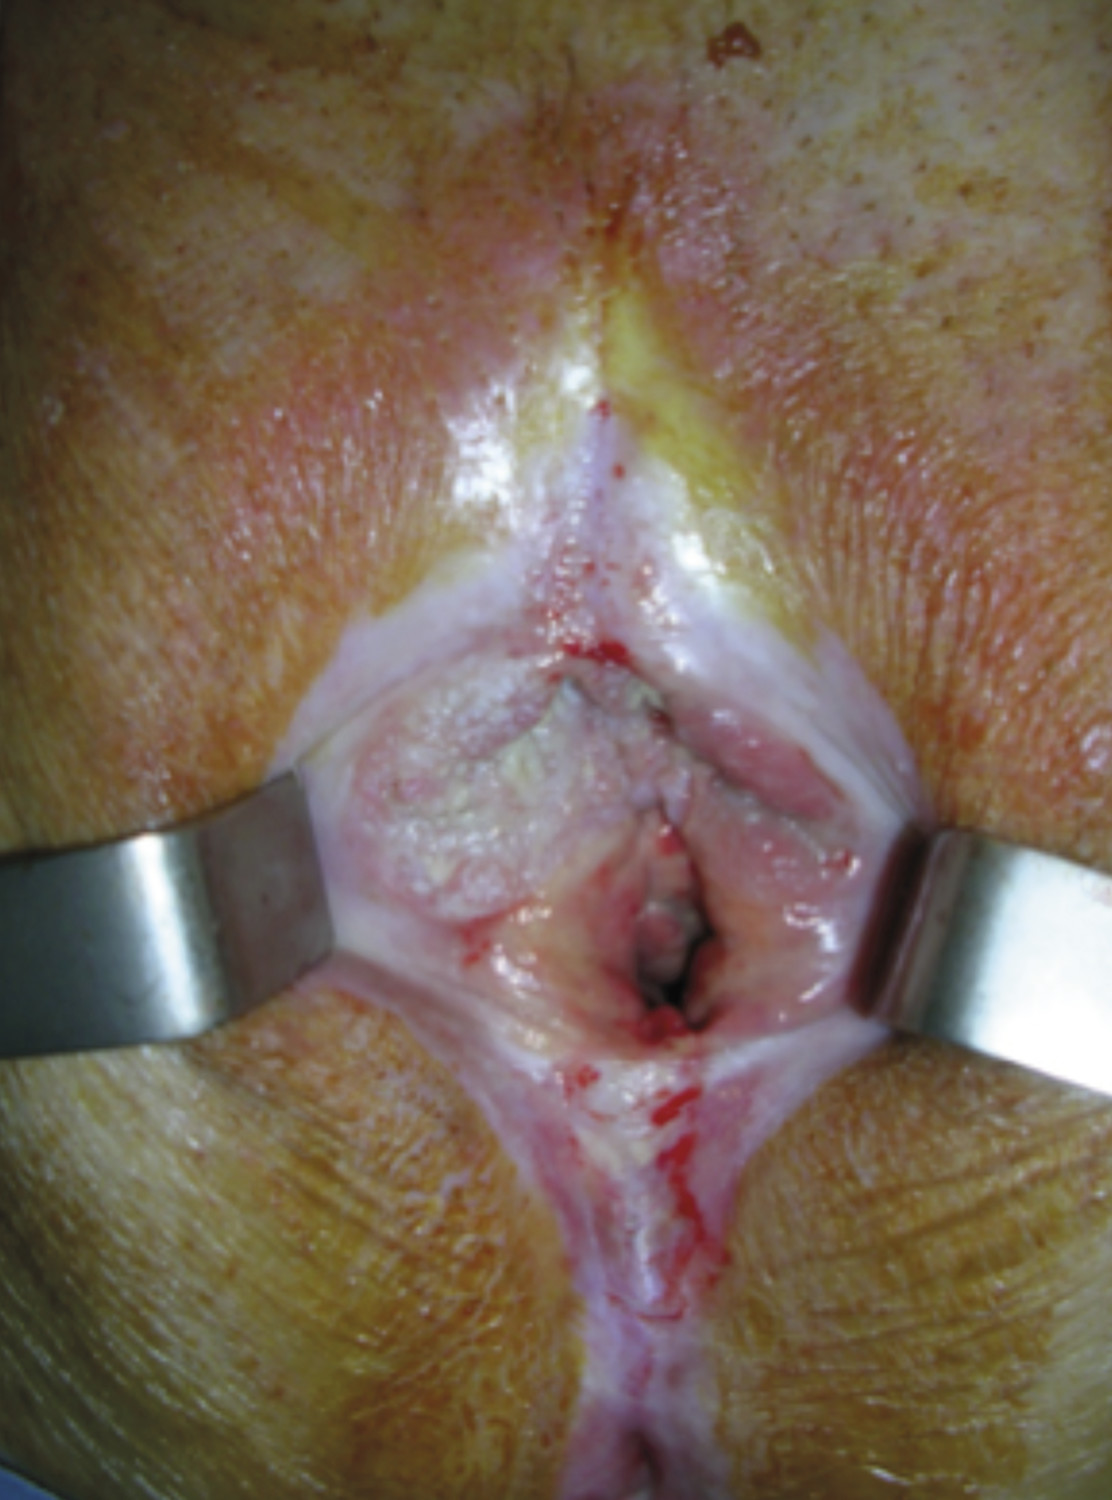 Consultation gynéco-dermatologique de pathologie vulvaire - Figure 9